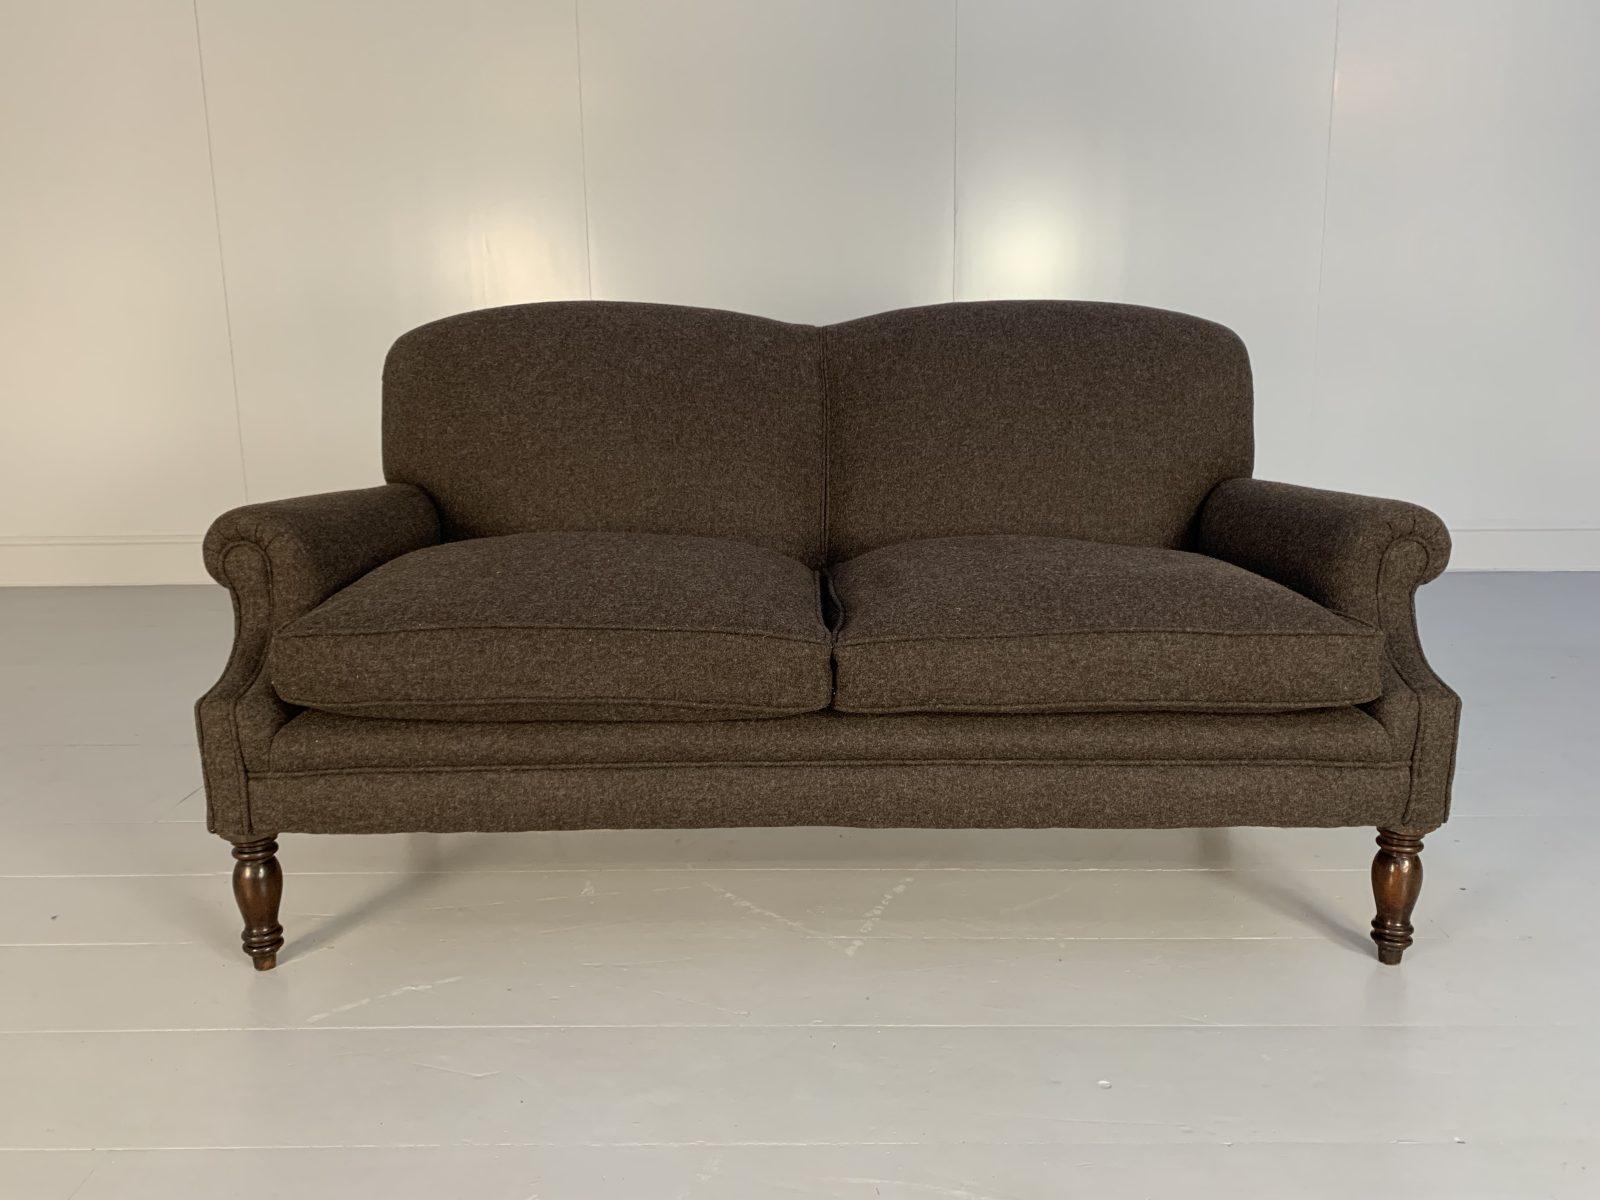 Bonjour les amis, et bienvenue à une nouvelle offre incontournable de Lord Browns Furniture, la première source de canapés et de chaises de qualité au Royaume-Uni.
L'offre proposée à cette occasion est, très probablement, le seul canapé que vous